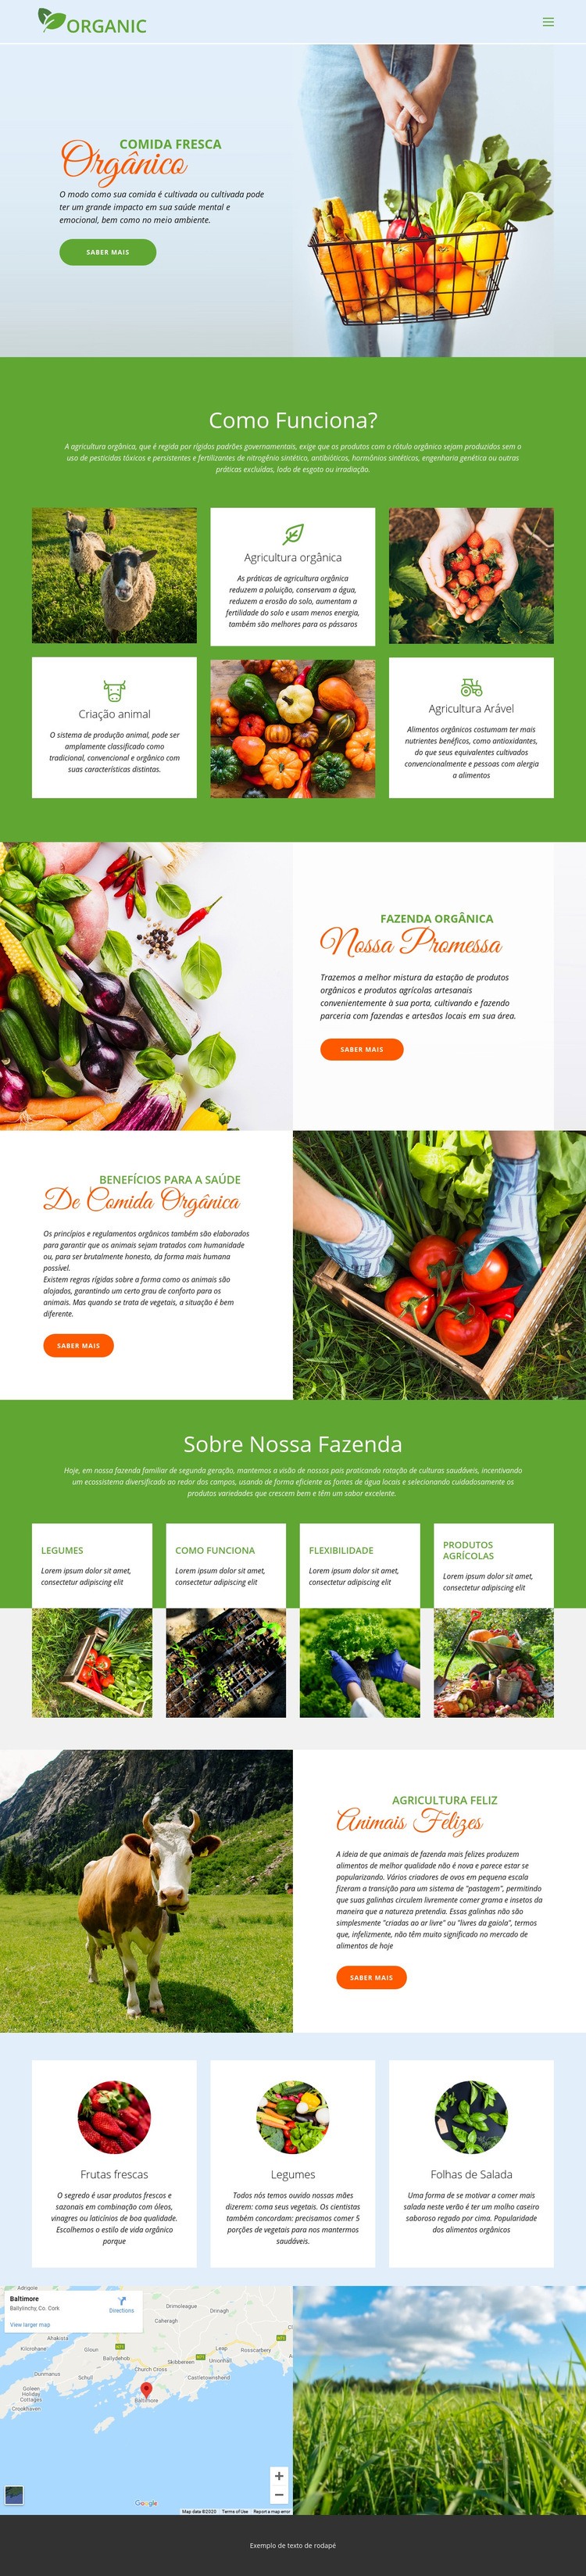 Coma a melhor comida orgânica Construtor de sites HTML